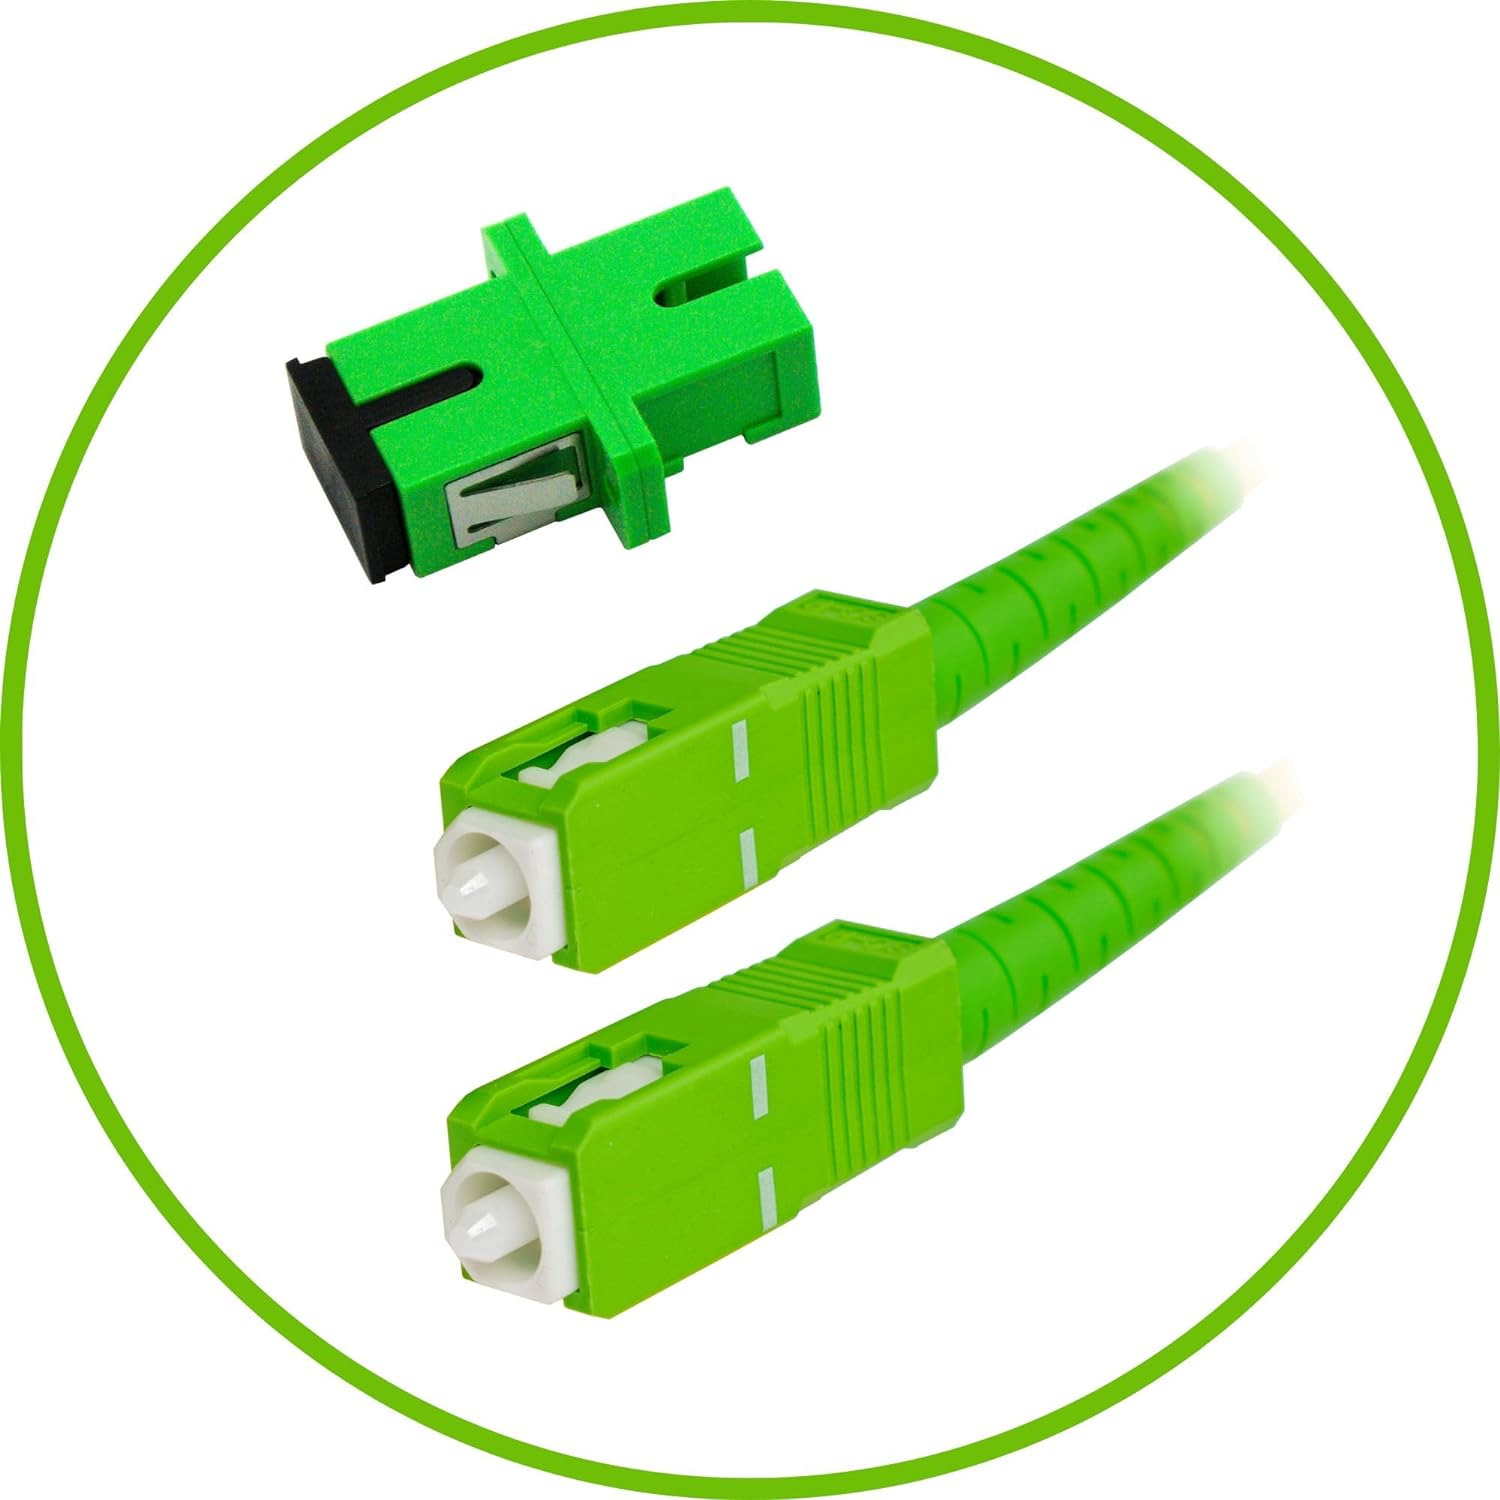 Pacsatsales - Fiber Optic Internet Cable - 3Ft / 1M SC/APC to SC/APC 